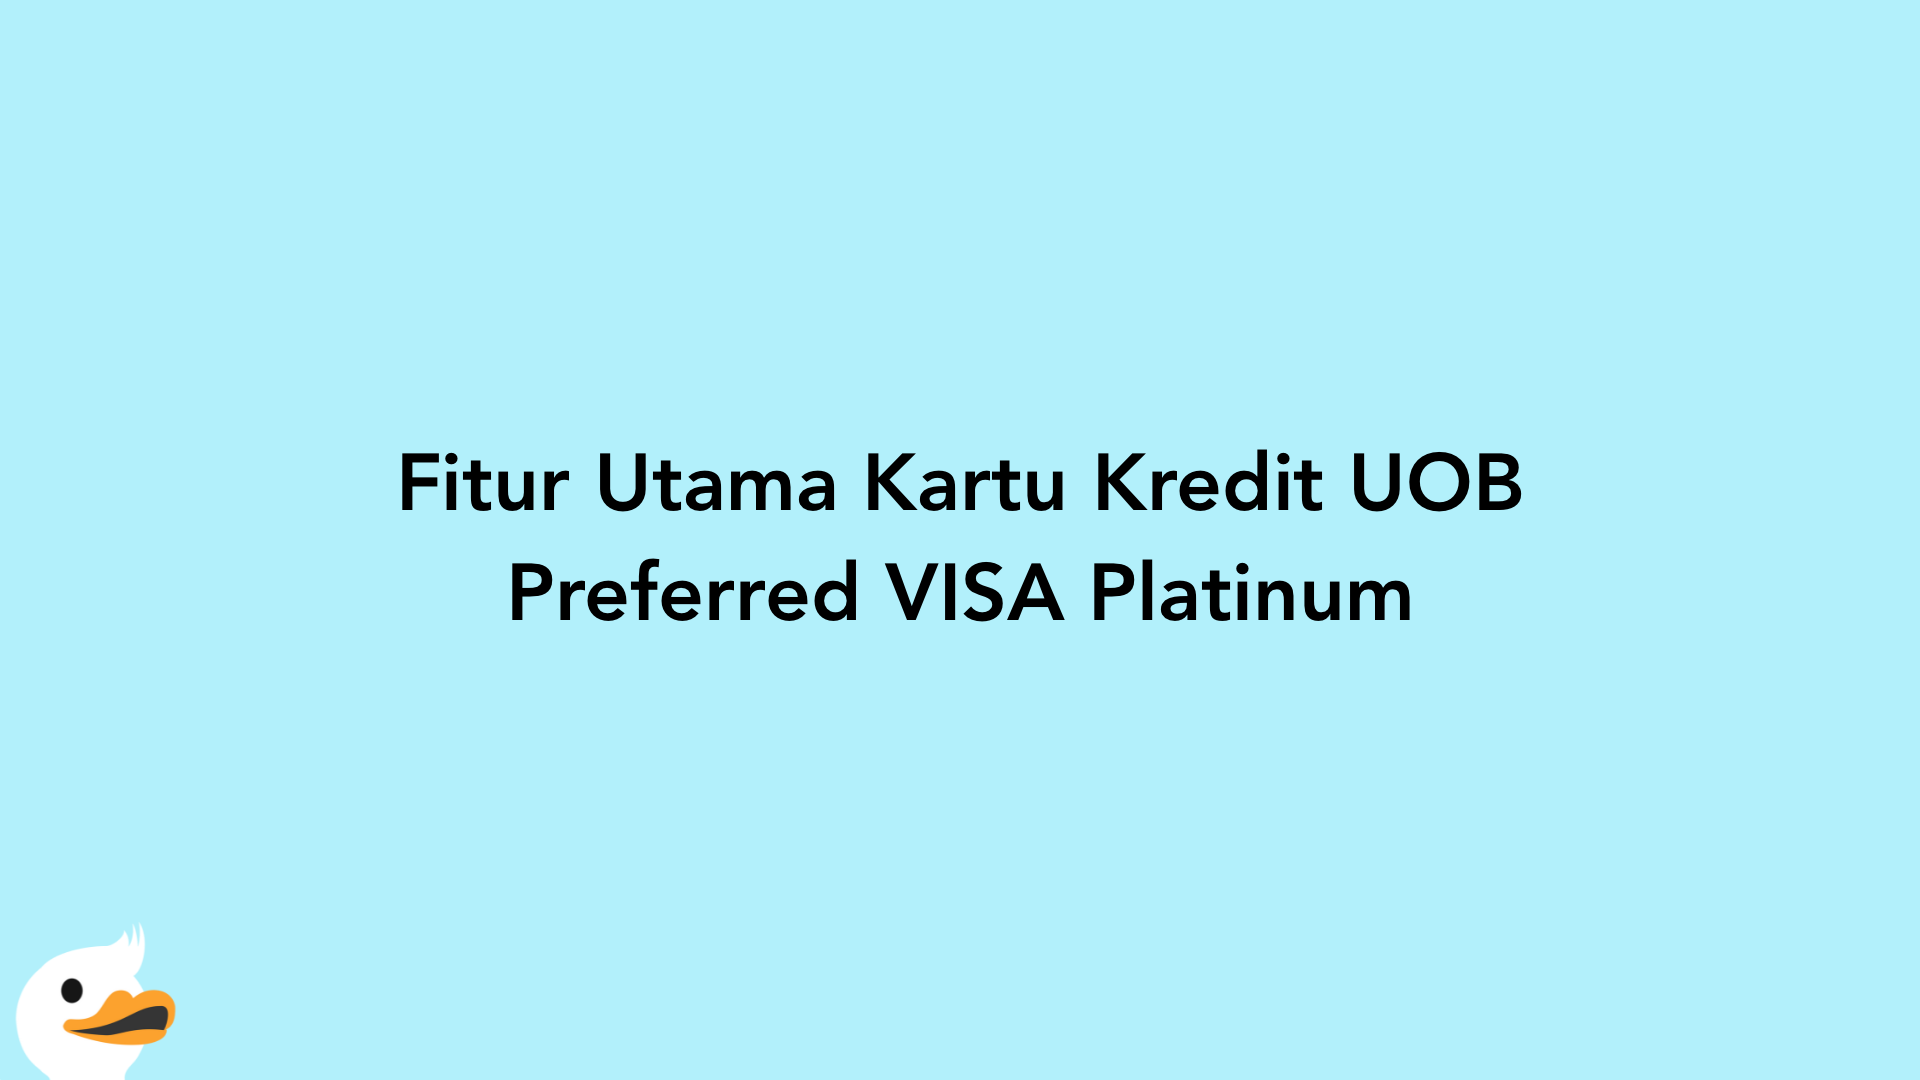 Fitur Utama Kartu Kredit UOB Preferred VISA Platinum